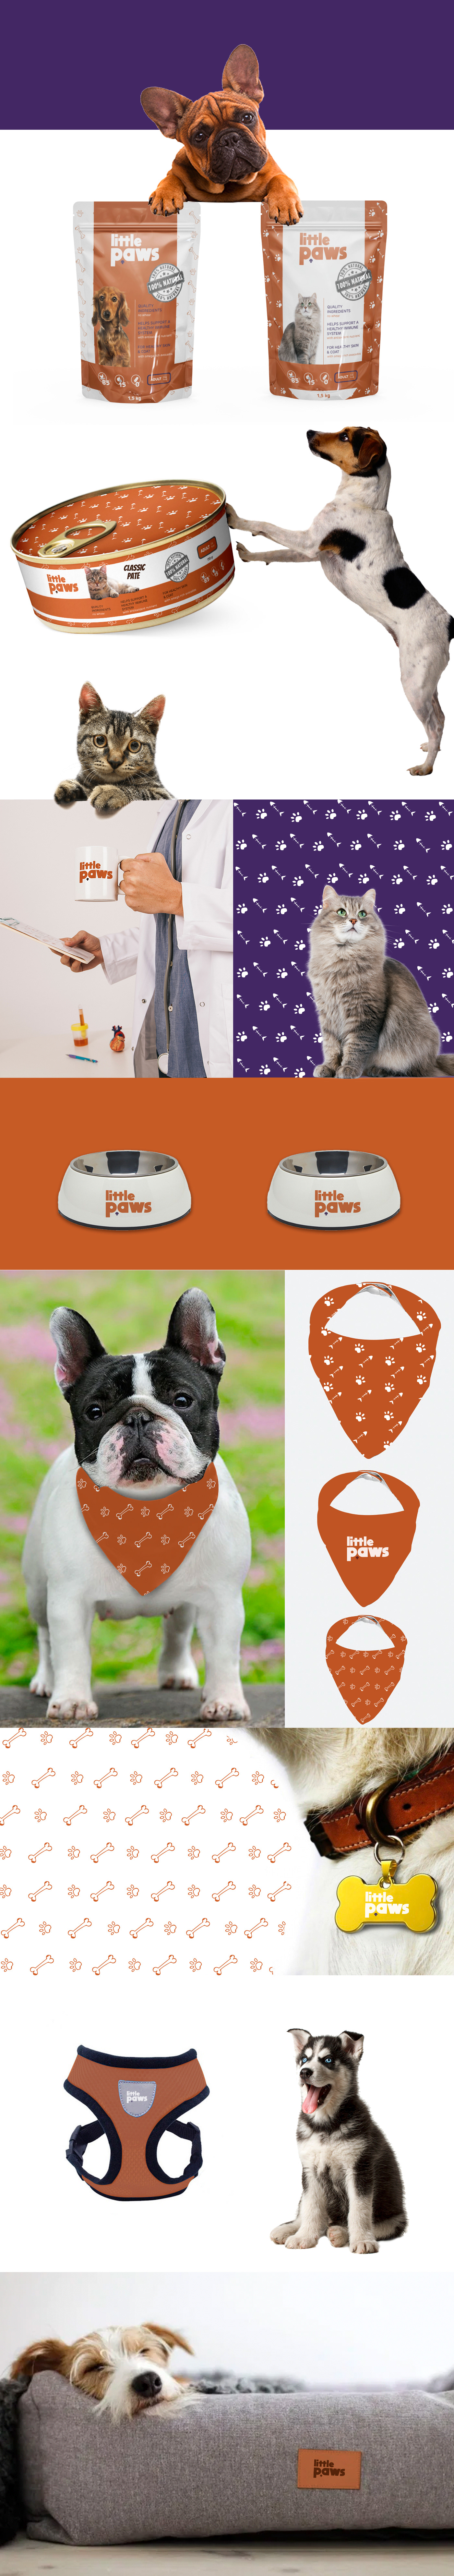 Pet pet shop pet logo design branding  Packaging marking animal shelter